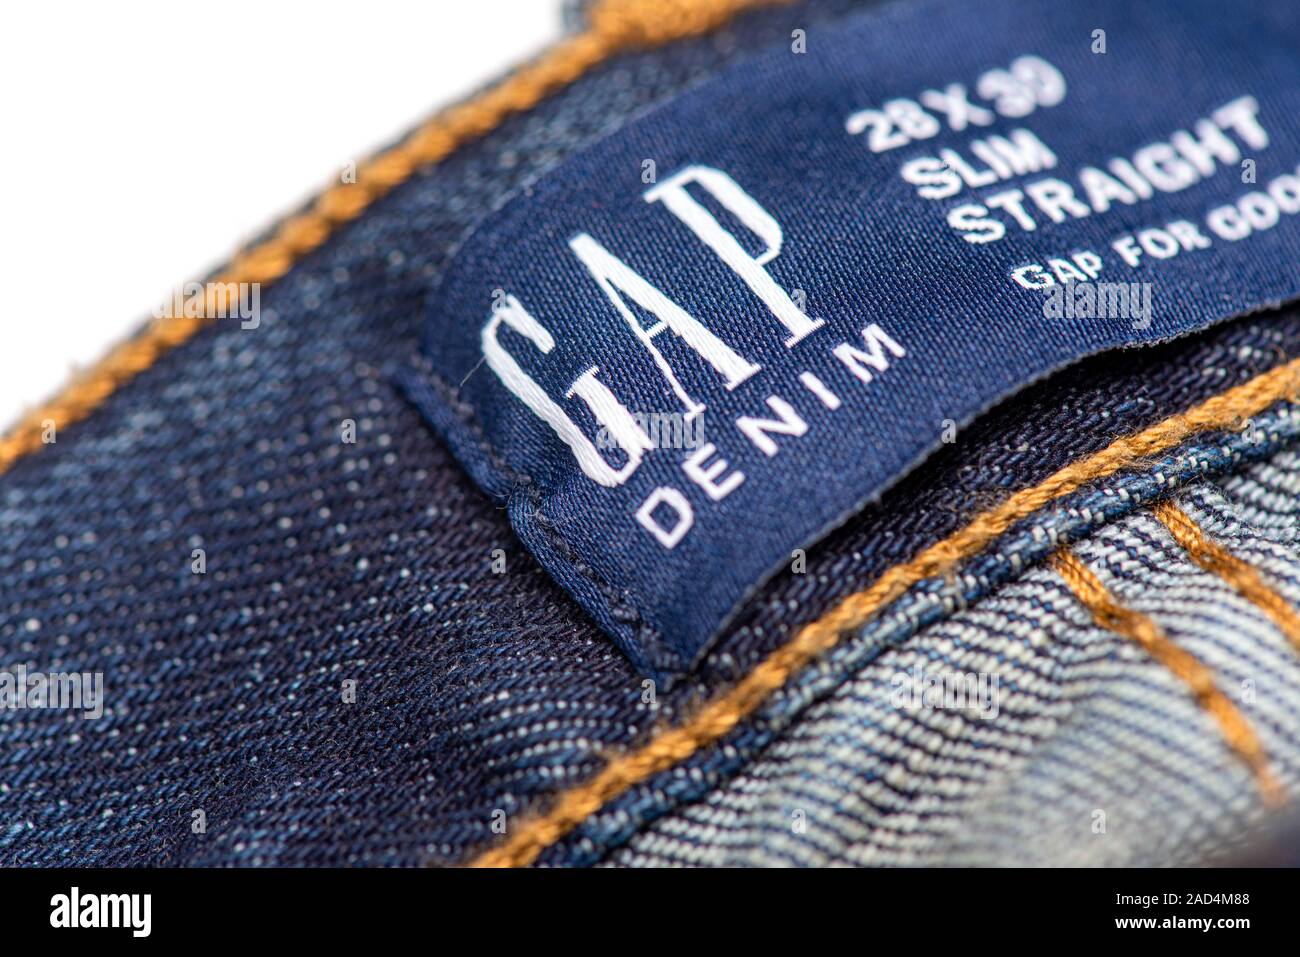 BERLIN - NOV 29: GAP Label on Denim Jeans at GAP Store in Berlin on  November 29. 2019 in Germany Stock Photo - Alamy